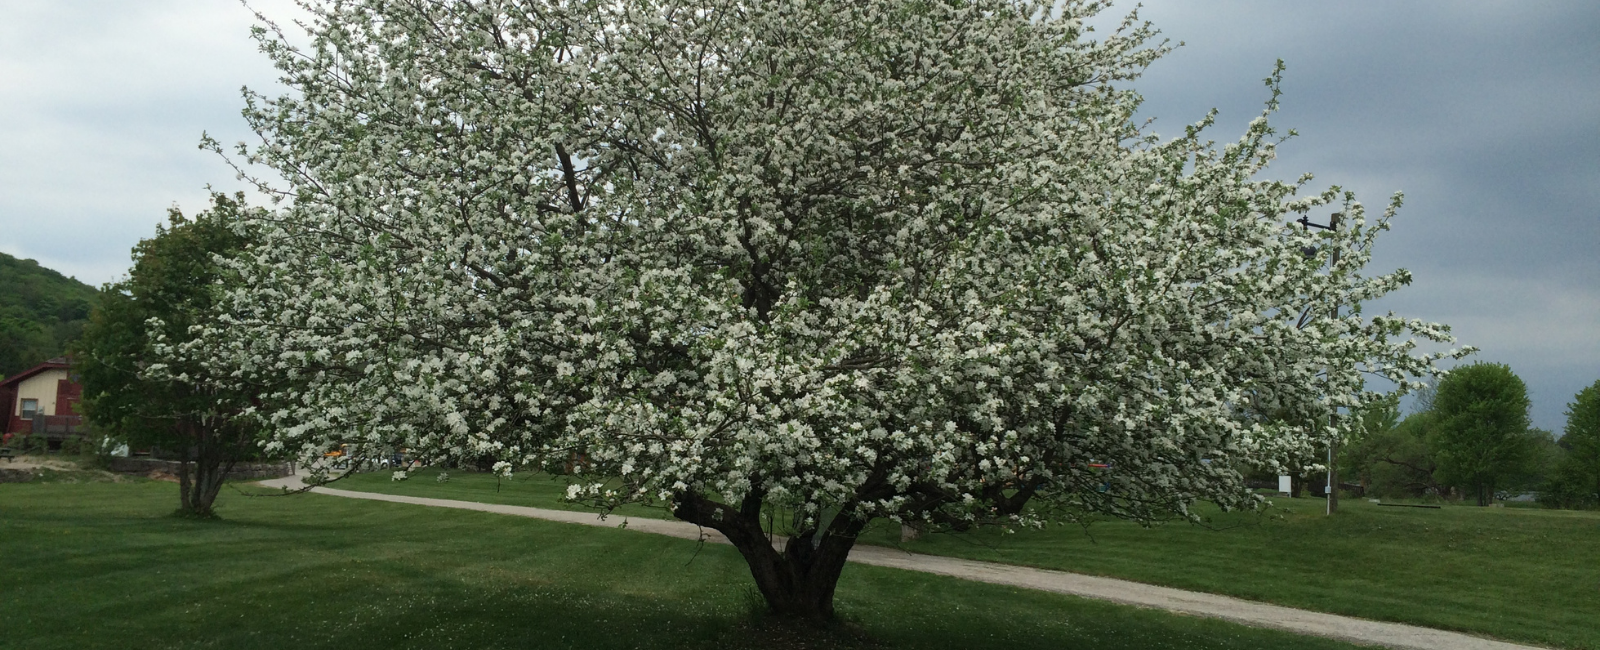 Apple tree in full blossom.